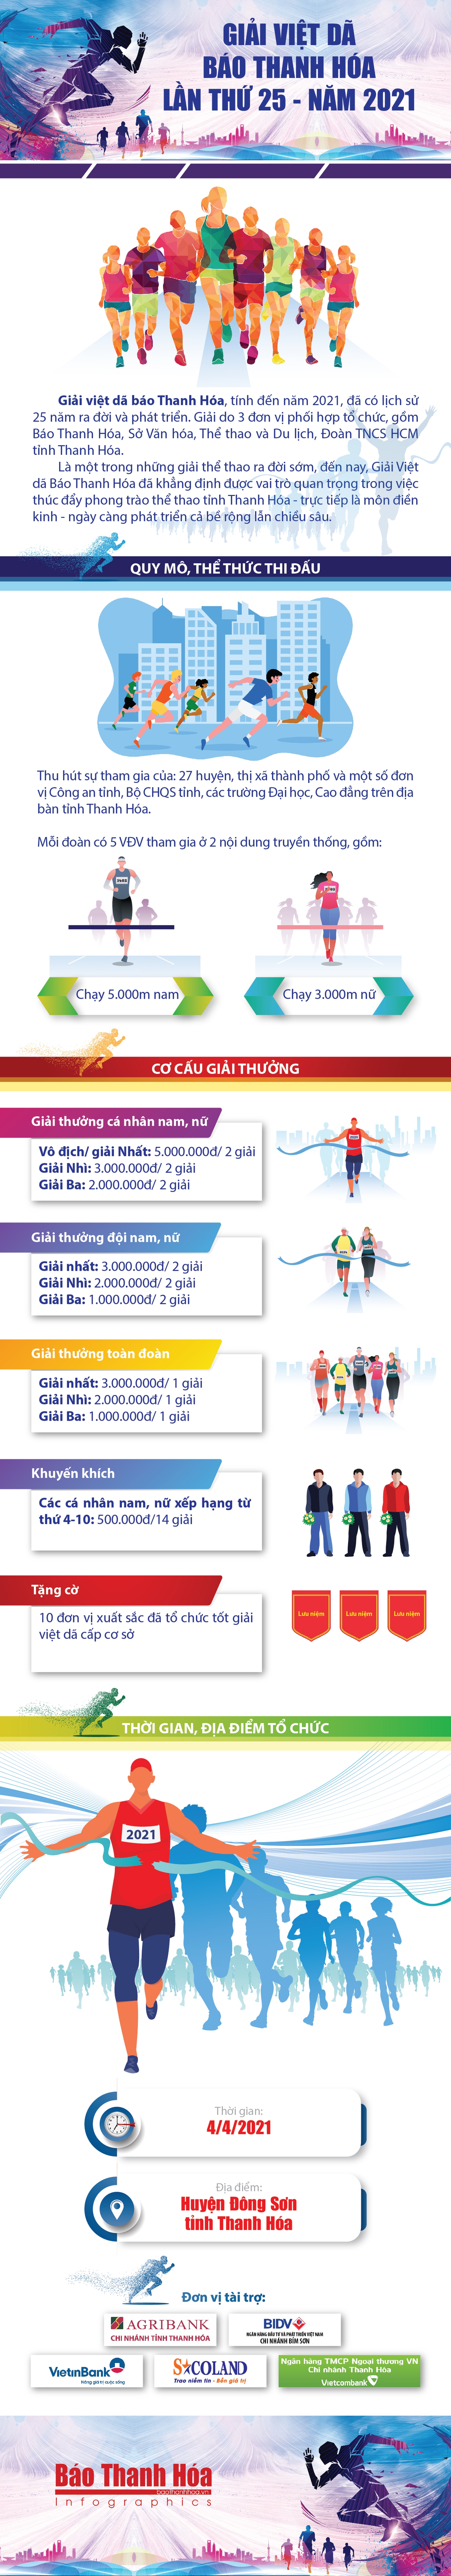 [Infographic] - Giải việt dã Báo Thanh Hóa năm 2021